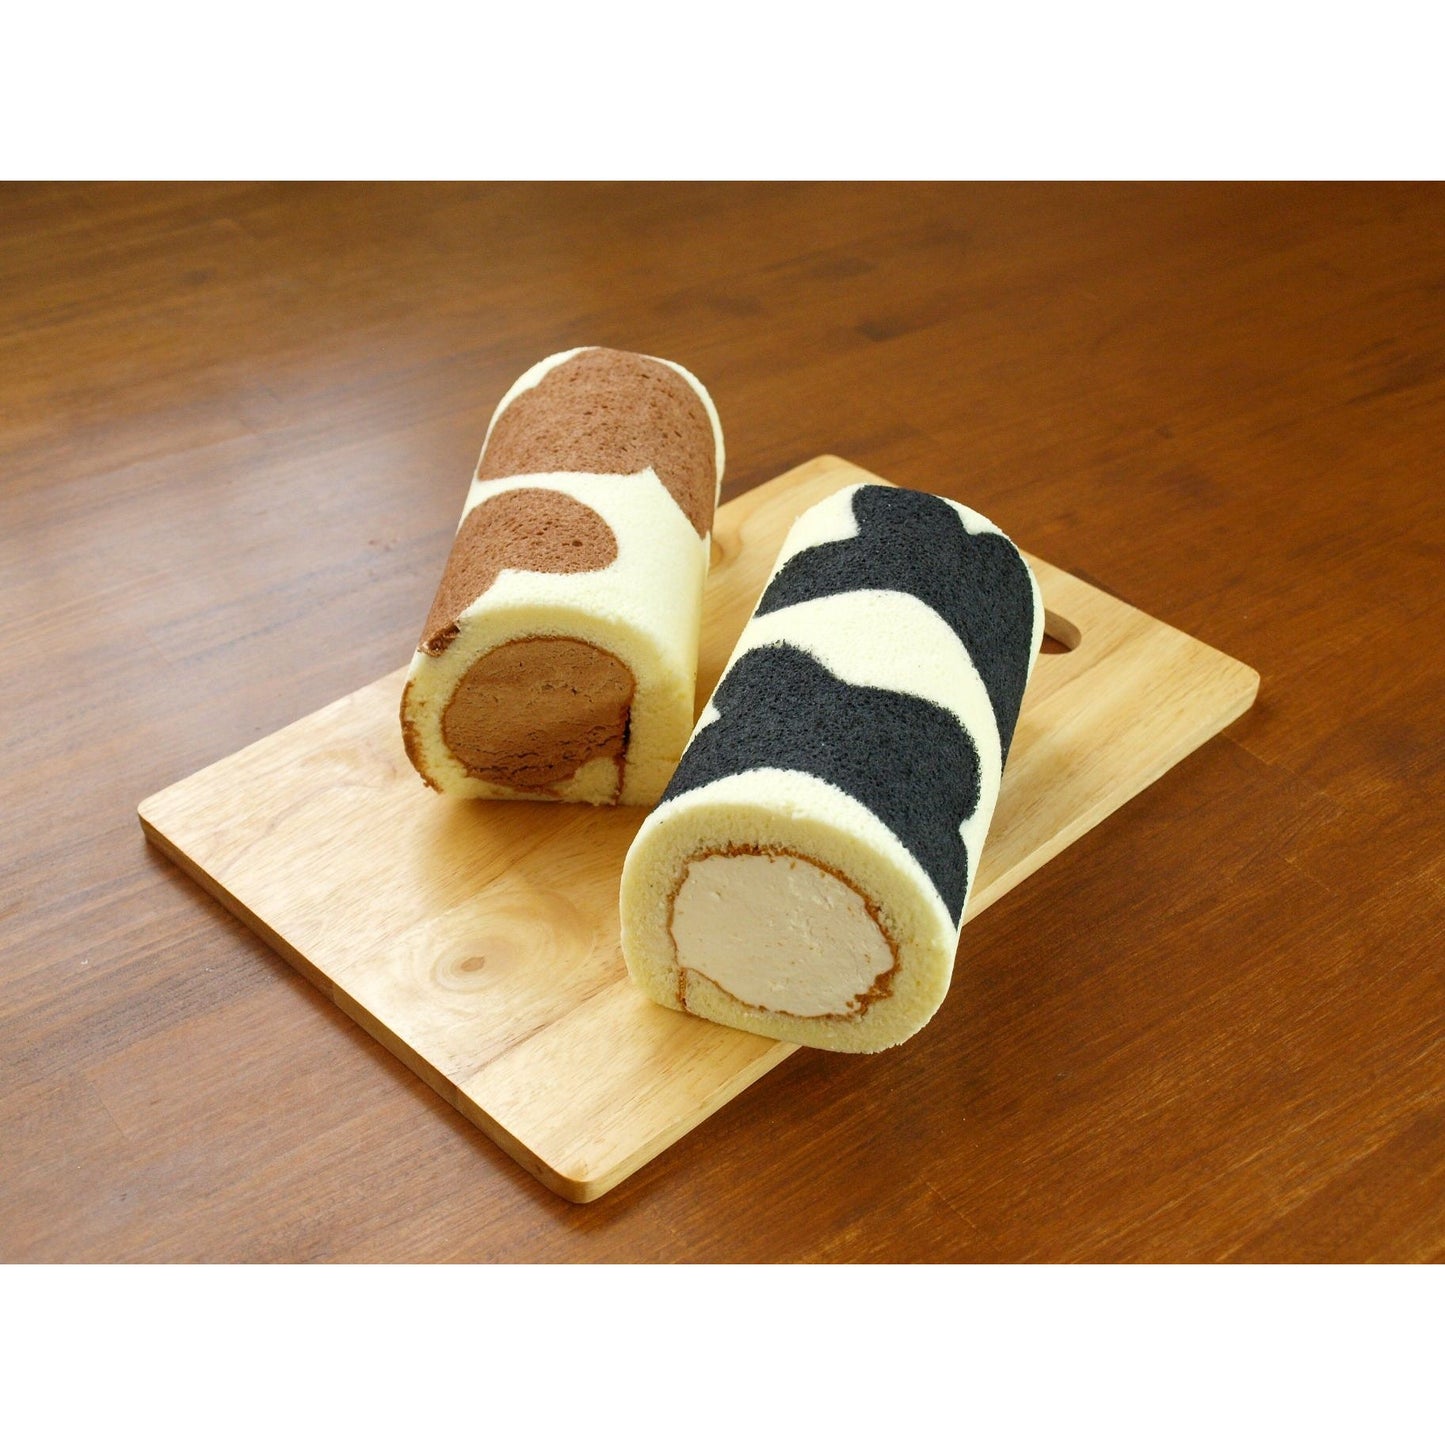 Kurosawa Ranch Beef pattern roll cake set 2 pieces